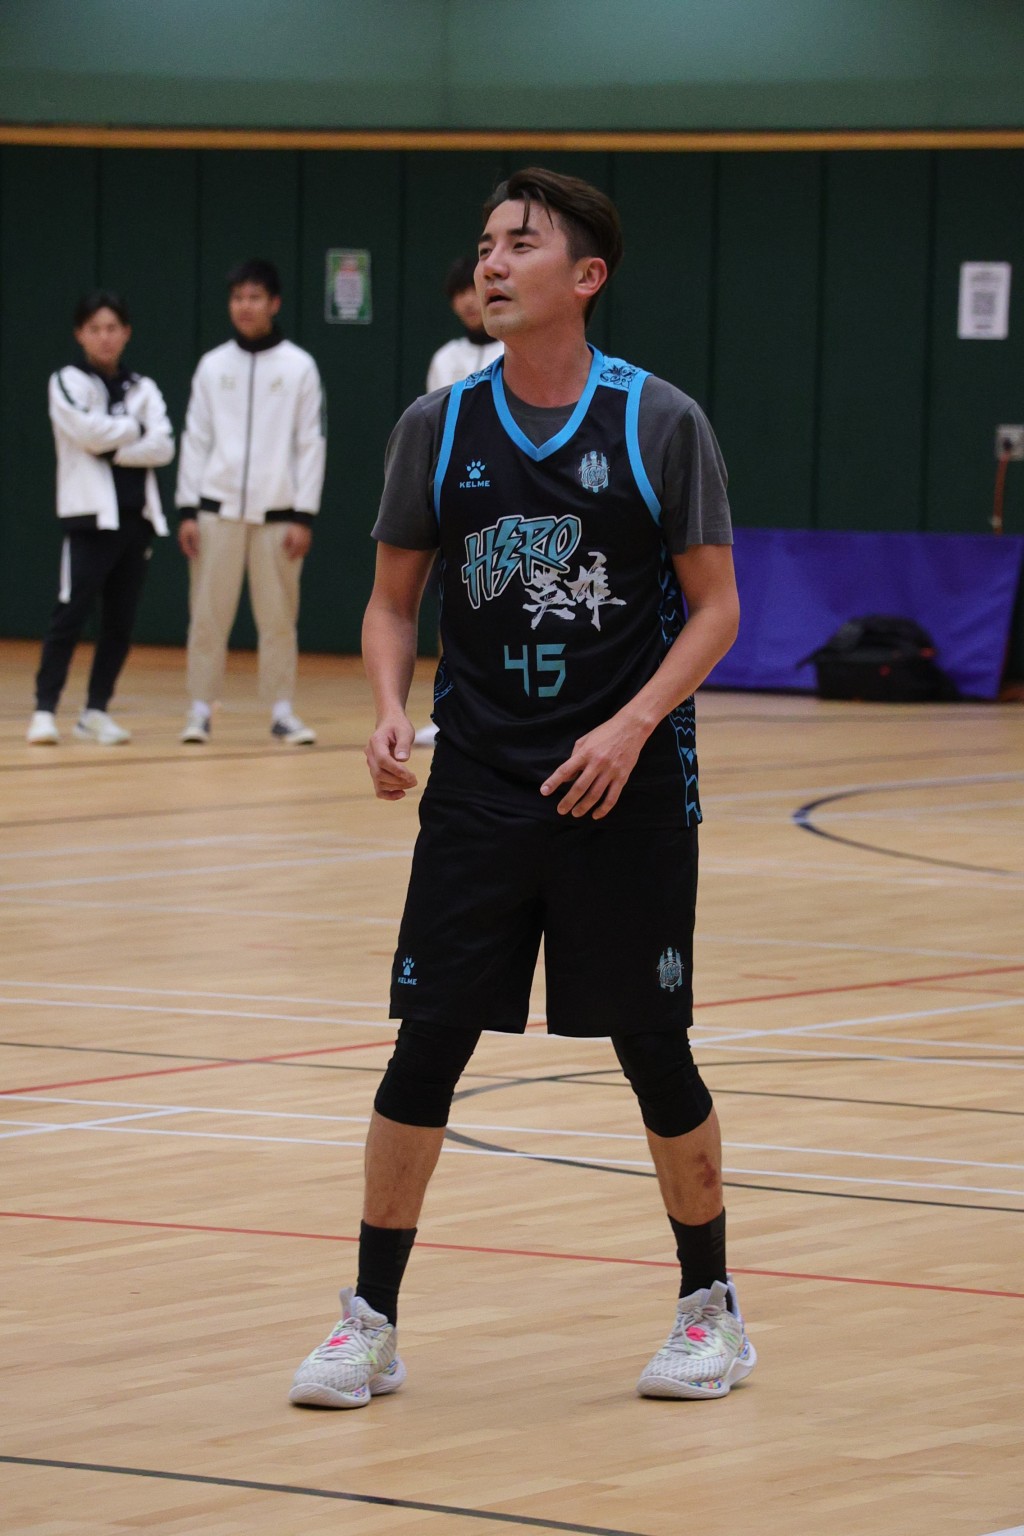 洪永城與蘇皓兒作為HERO明星籃球隊隊友。